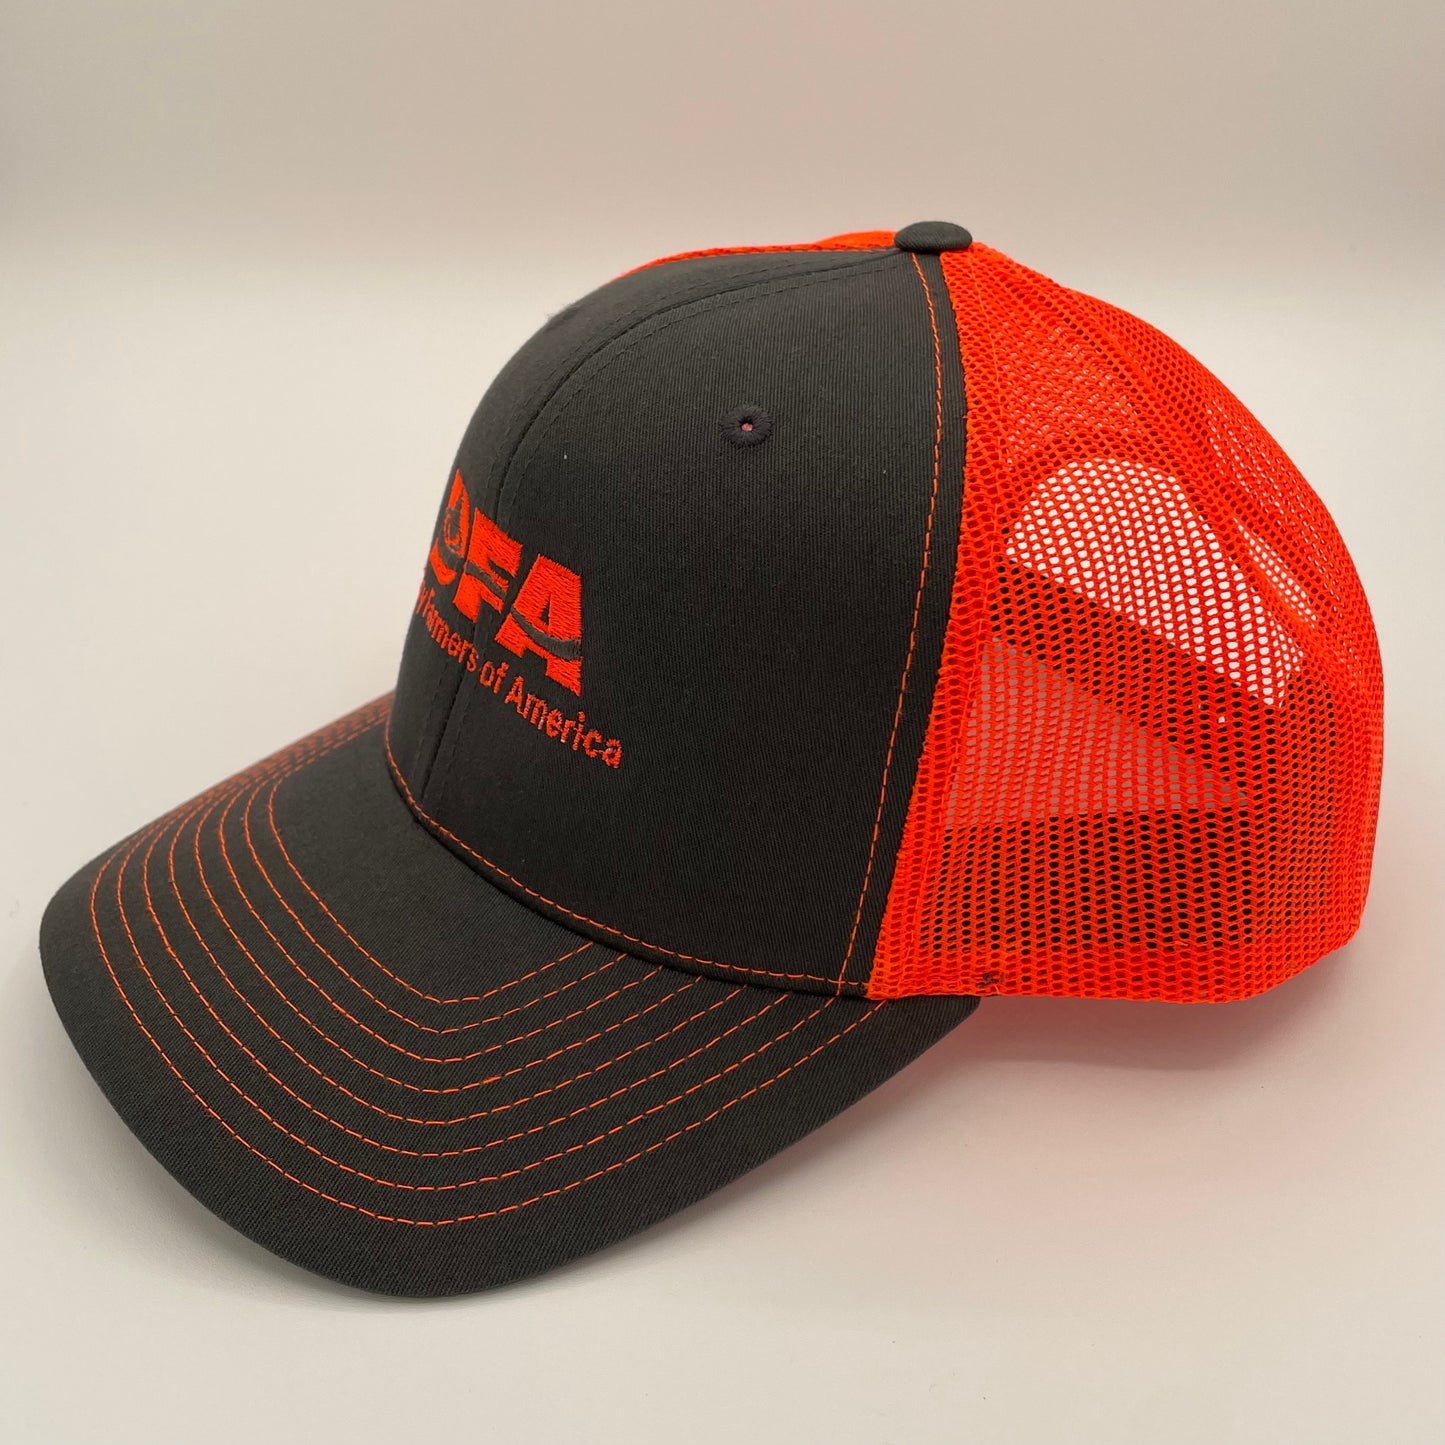 Mesh-back baseball designer caps… Available in store now @R200 DM